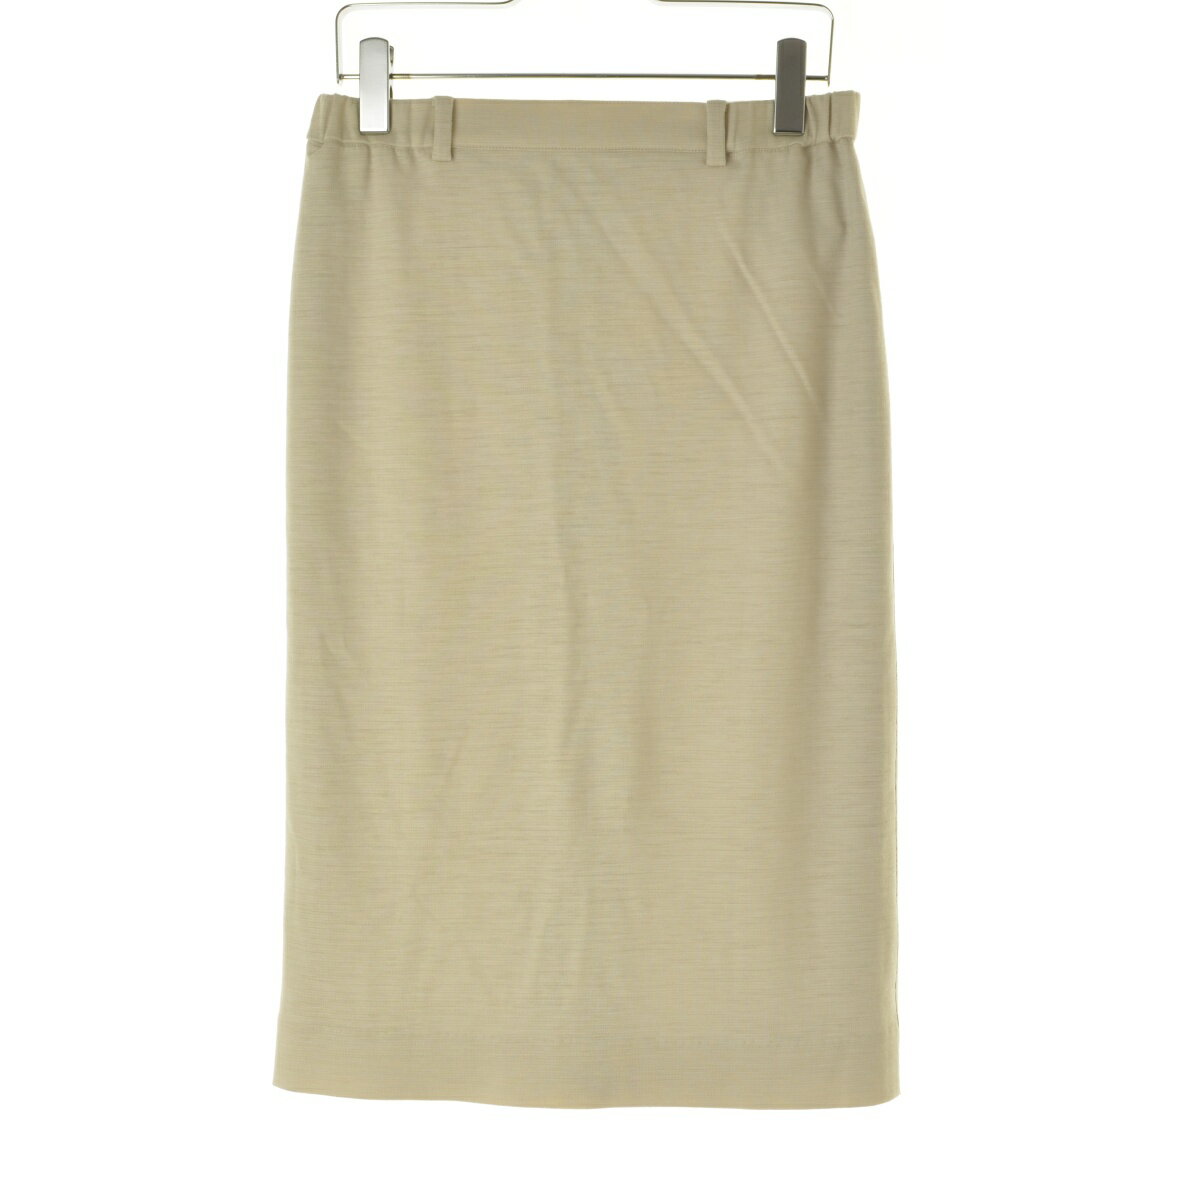 【中古】blancvert / ブランベールLR4457111 サイド装飾ロングスカート【caccadbh-l】